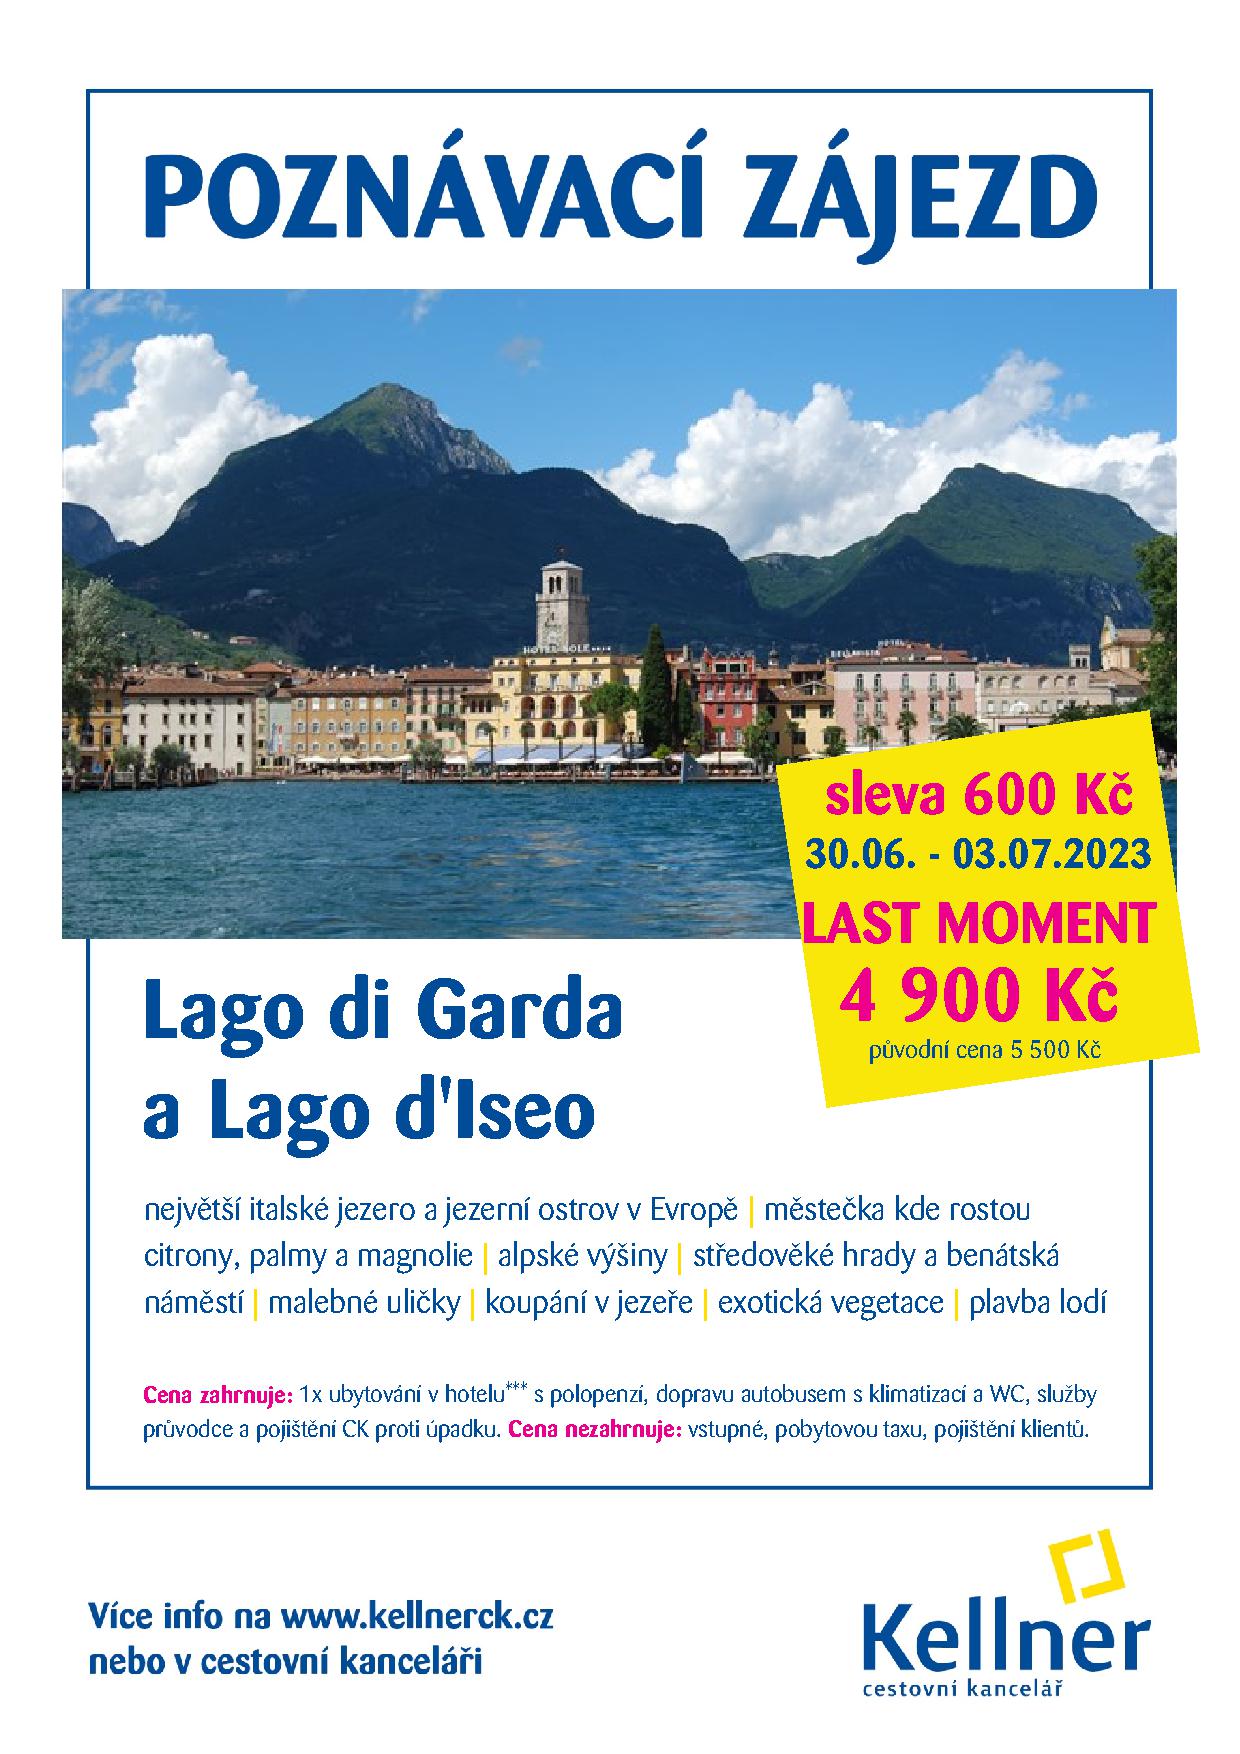 3. Lago di Garda a Lago d'Iseo